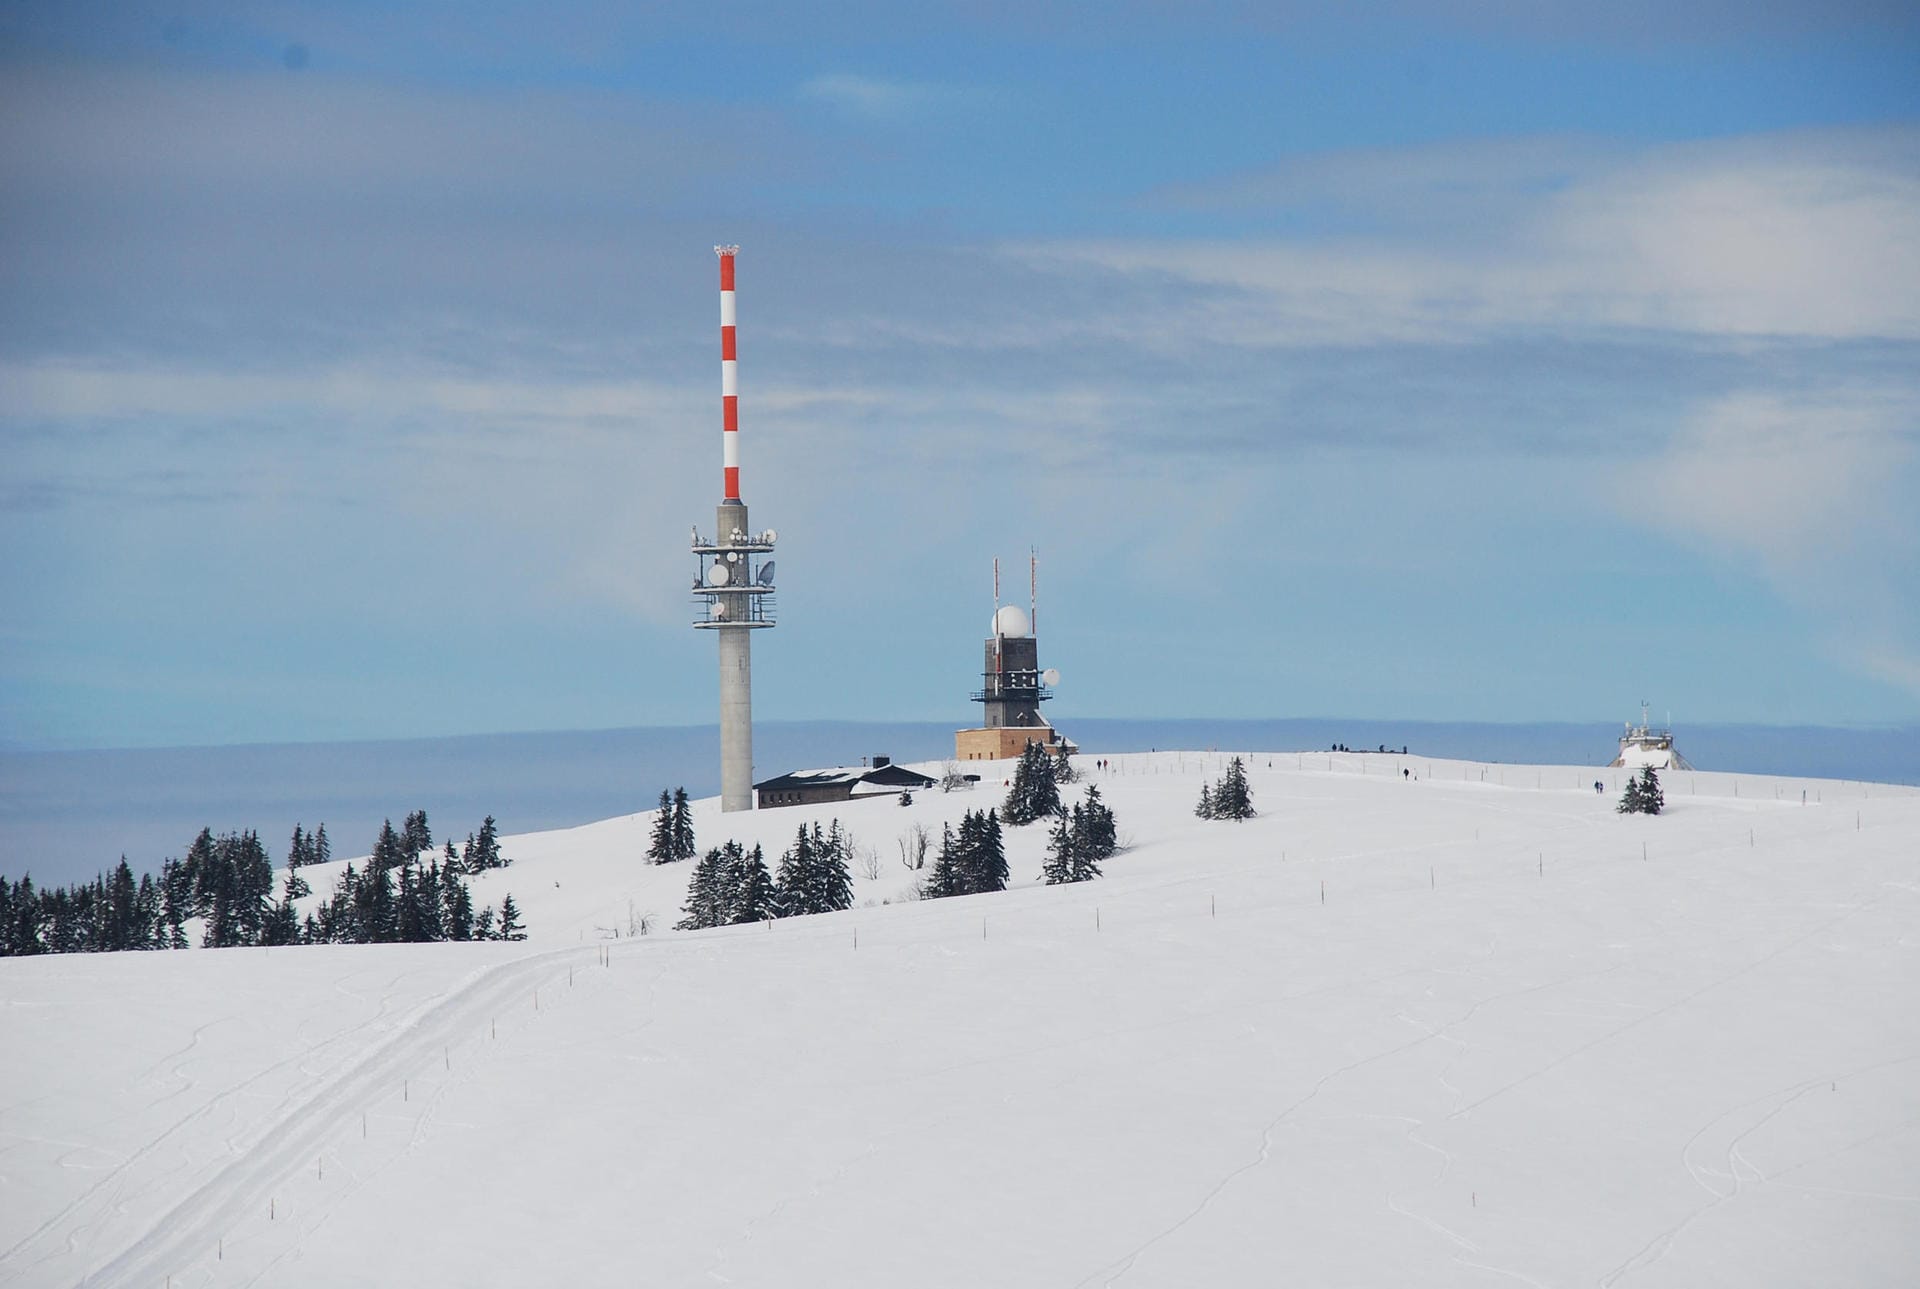 Der erste deutsche Skiclub wurde 1891 am Feldberg gegründet.